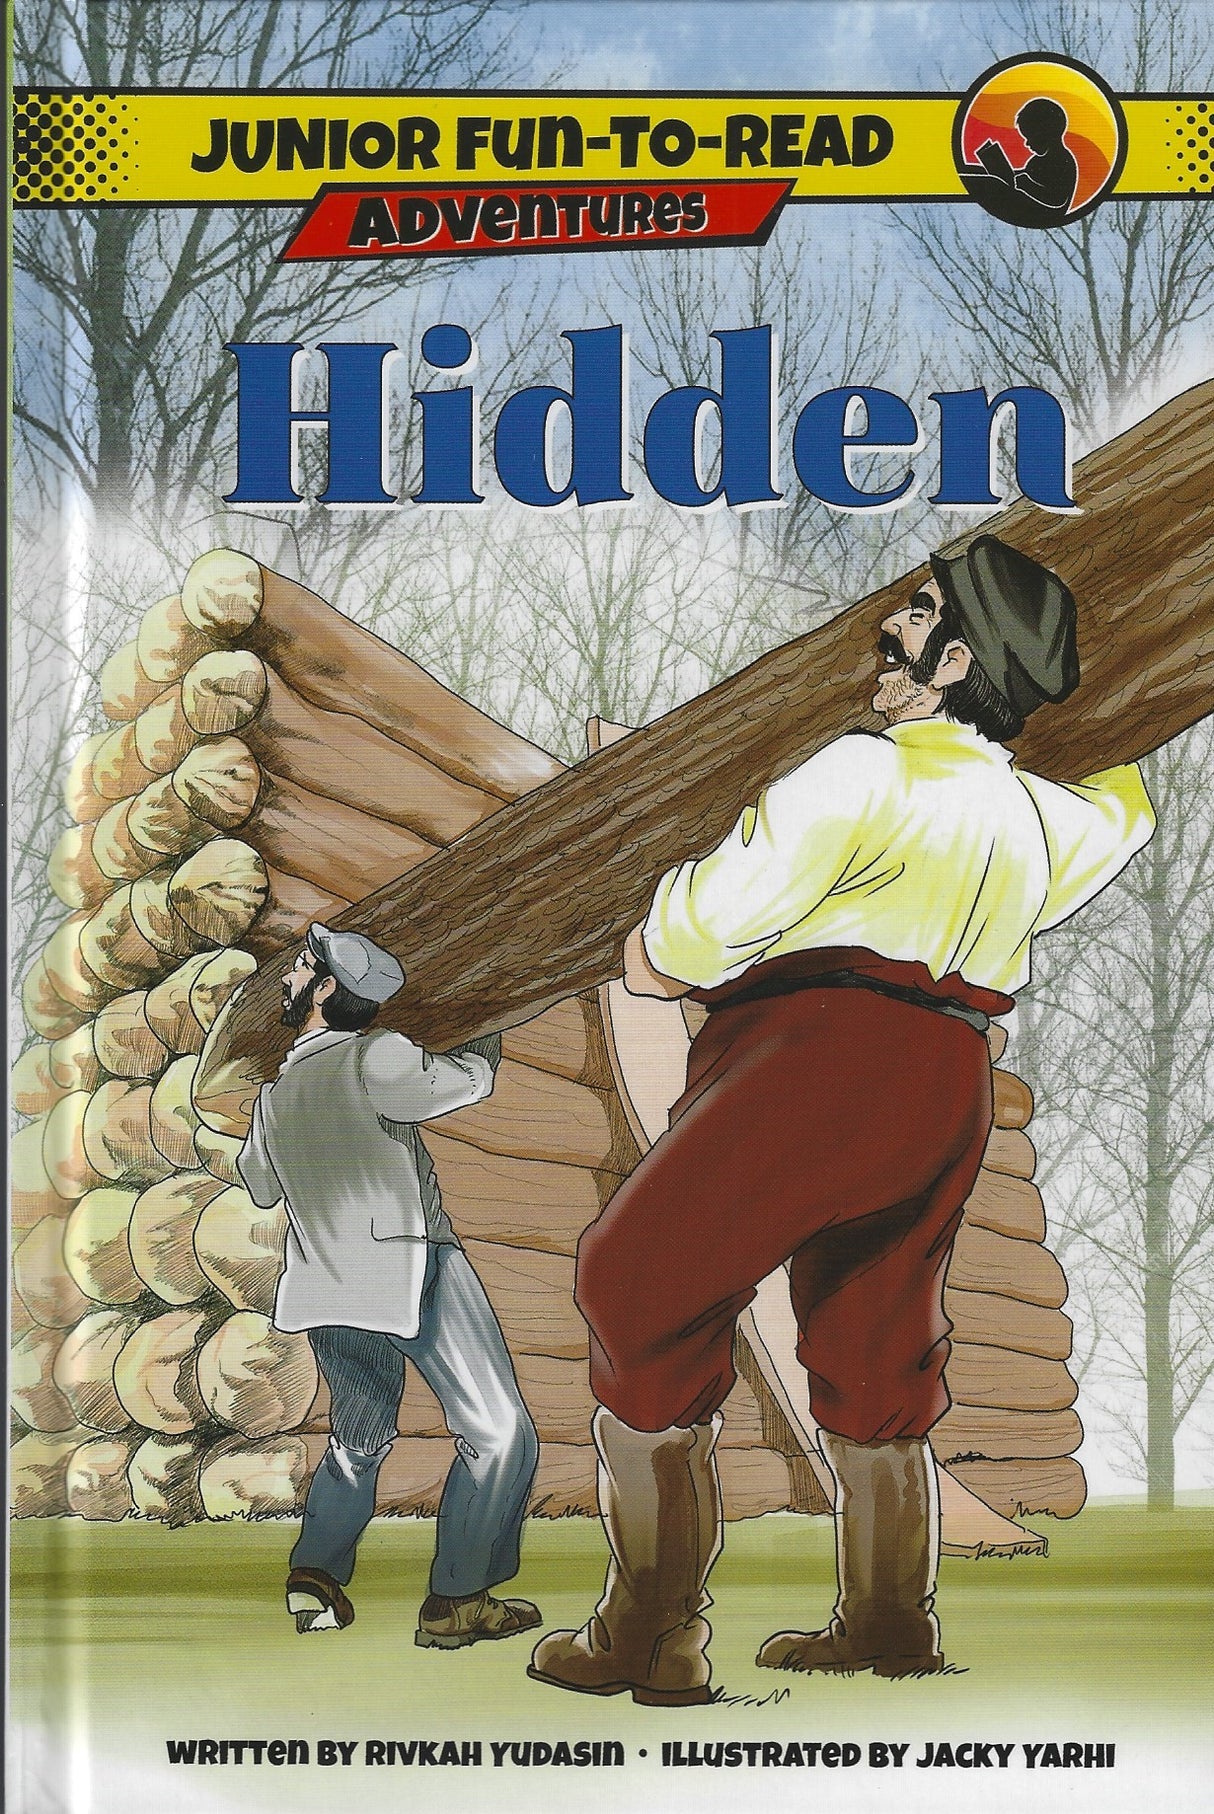 Hidden - Junior Fun-to-Read Adventures